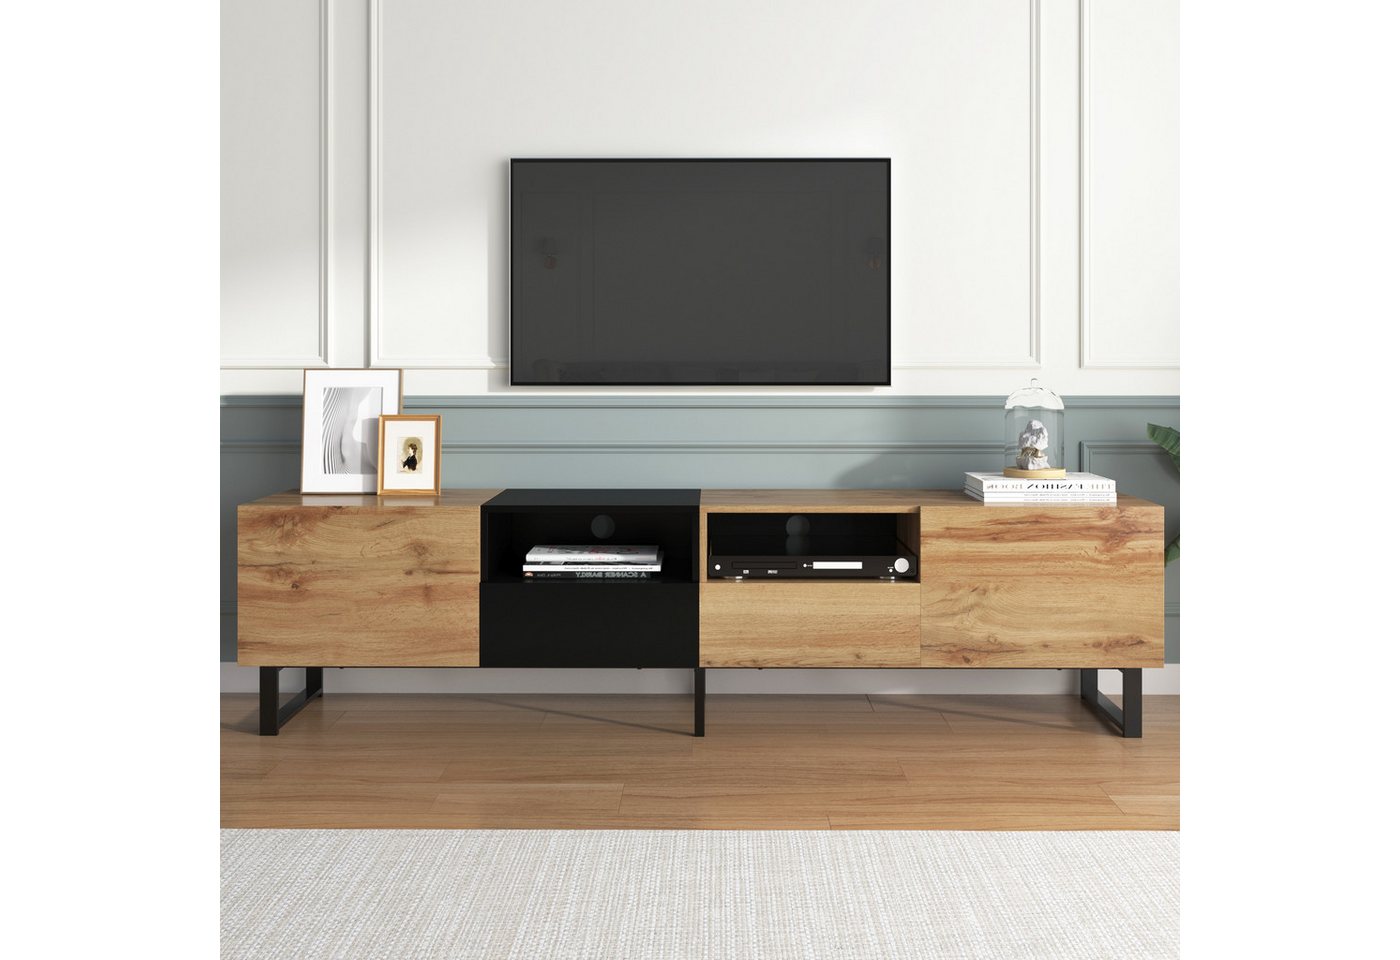 IDEASY Spind Moderner TV-Schrank, farblich passendes Design in Schwarz und Holz, zwei Türen, zwei Schubladen, zwei Fächer, 190*38*48 cm von IDEASY